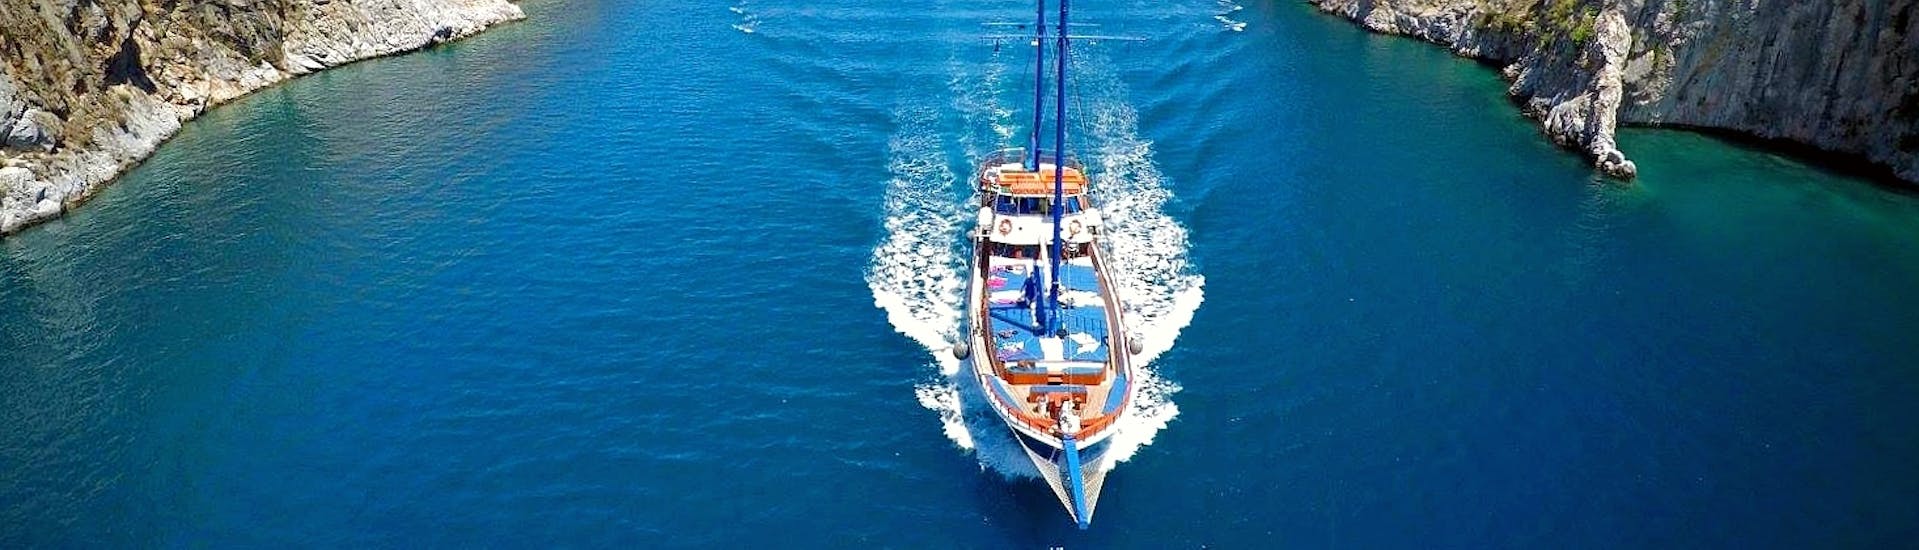 Een elegante zeilboot die snel vaart op de blauwe wateren rond de Dodekanesos eilanden tijdens een zeilboottocht naar de eilanden Kalymnos, Plati & Pserimos met Odyssey Boat.